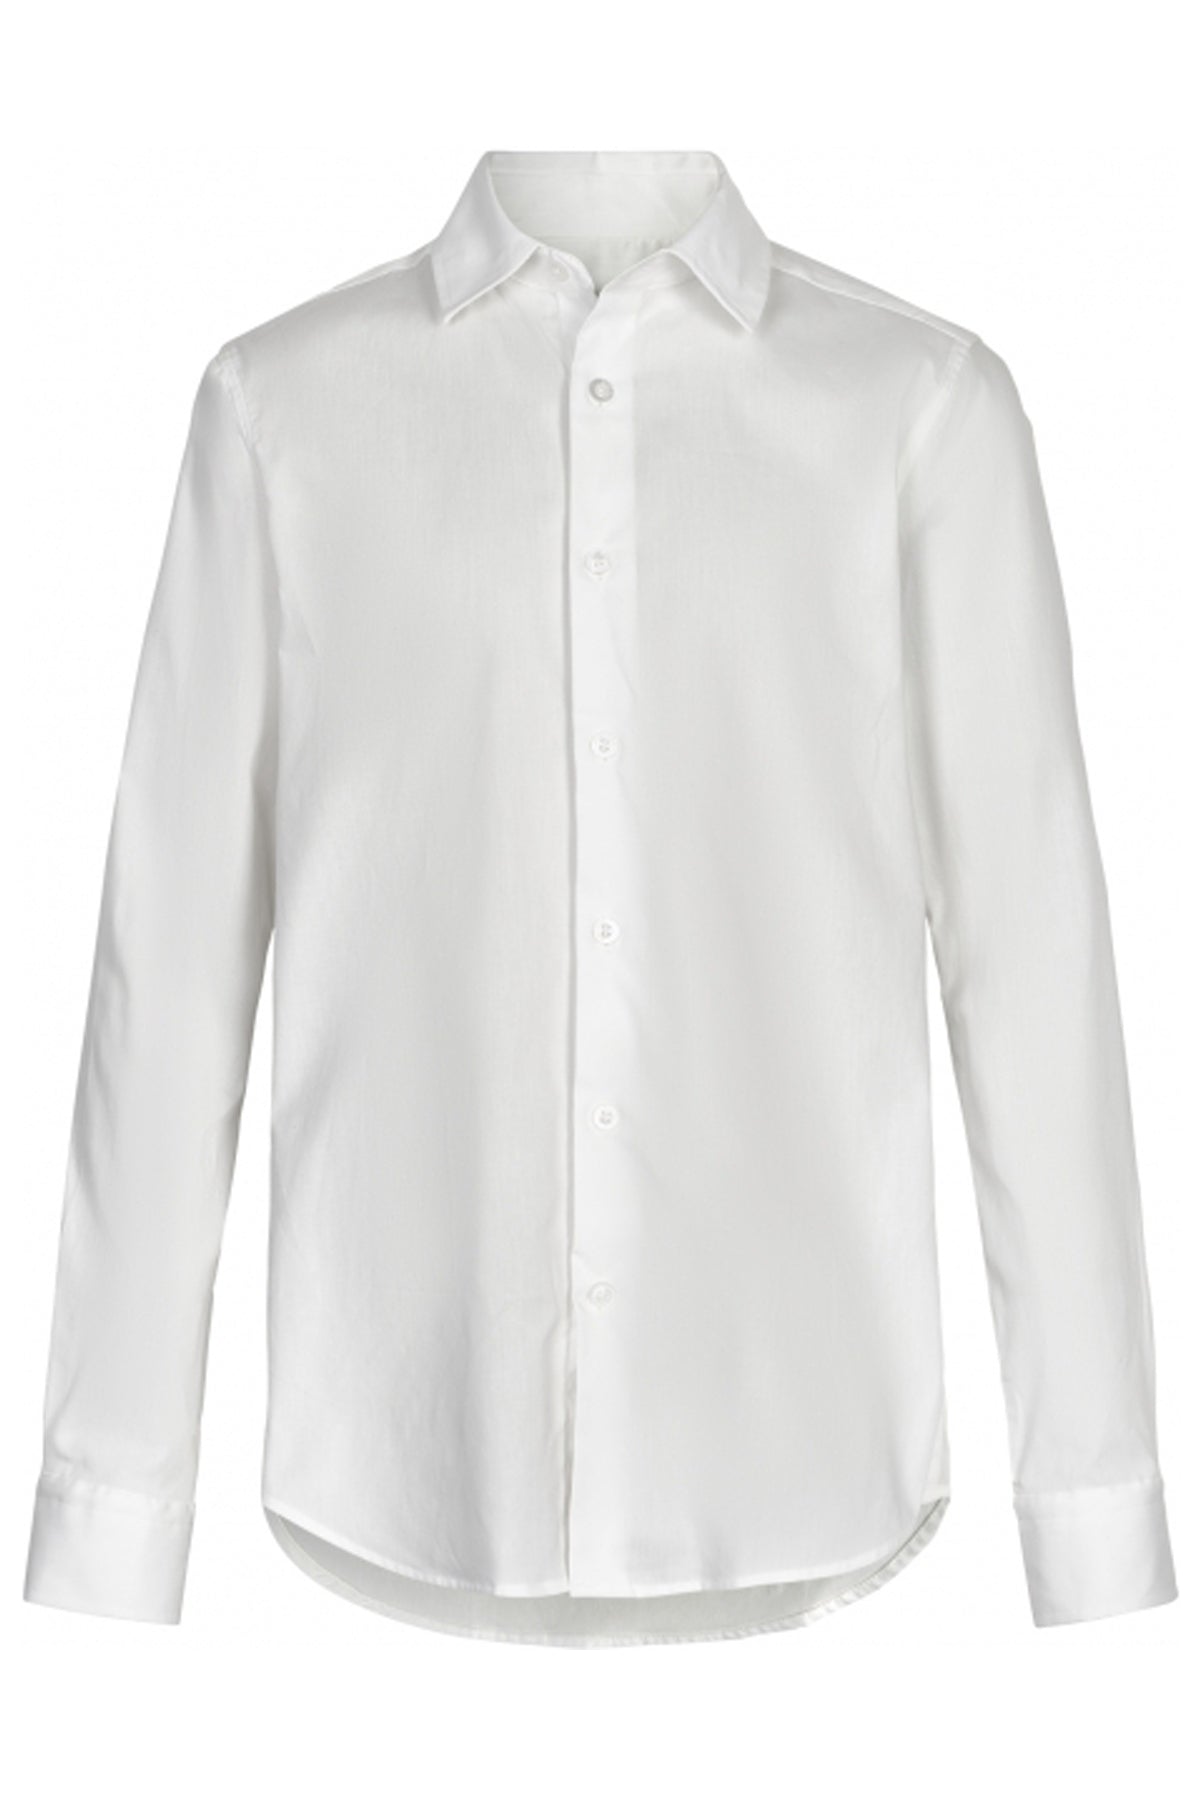 Cost:bart CBKasper L/Æ Skjorte Skjorter 100 Bright White